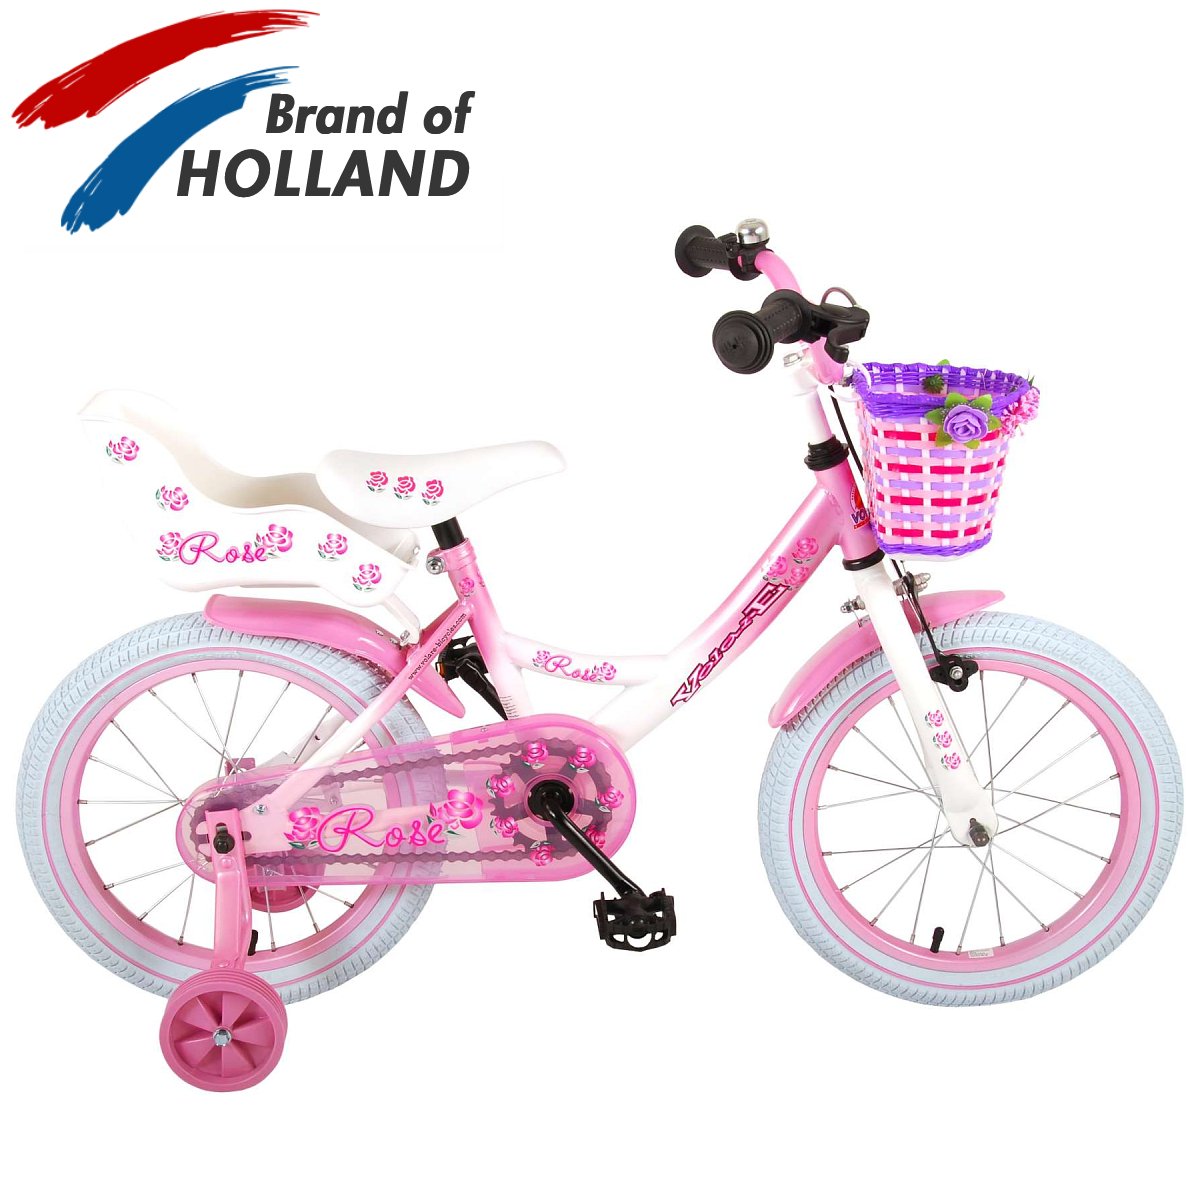 Vaikiškas dviratis VOLARE 16" Rose (81611) rožinis/baltas - 1